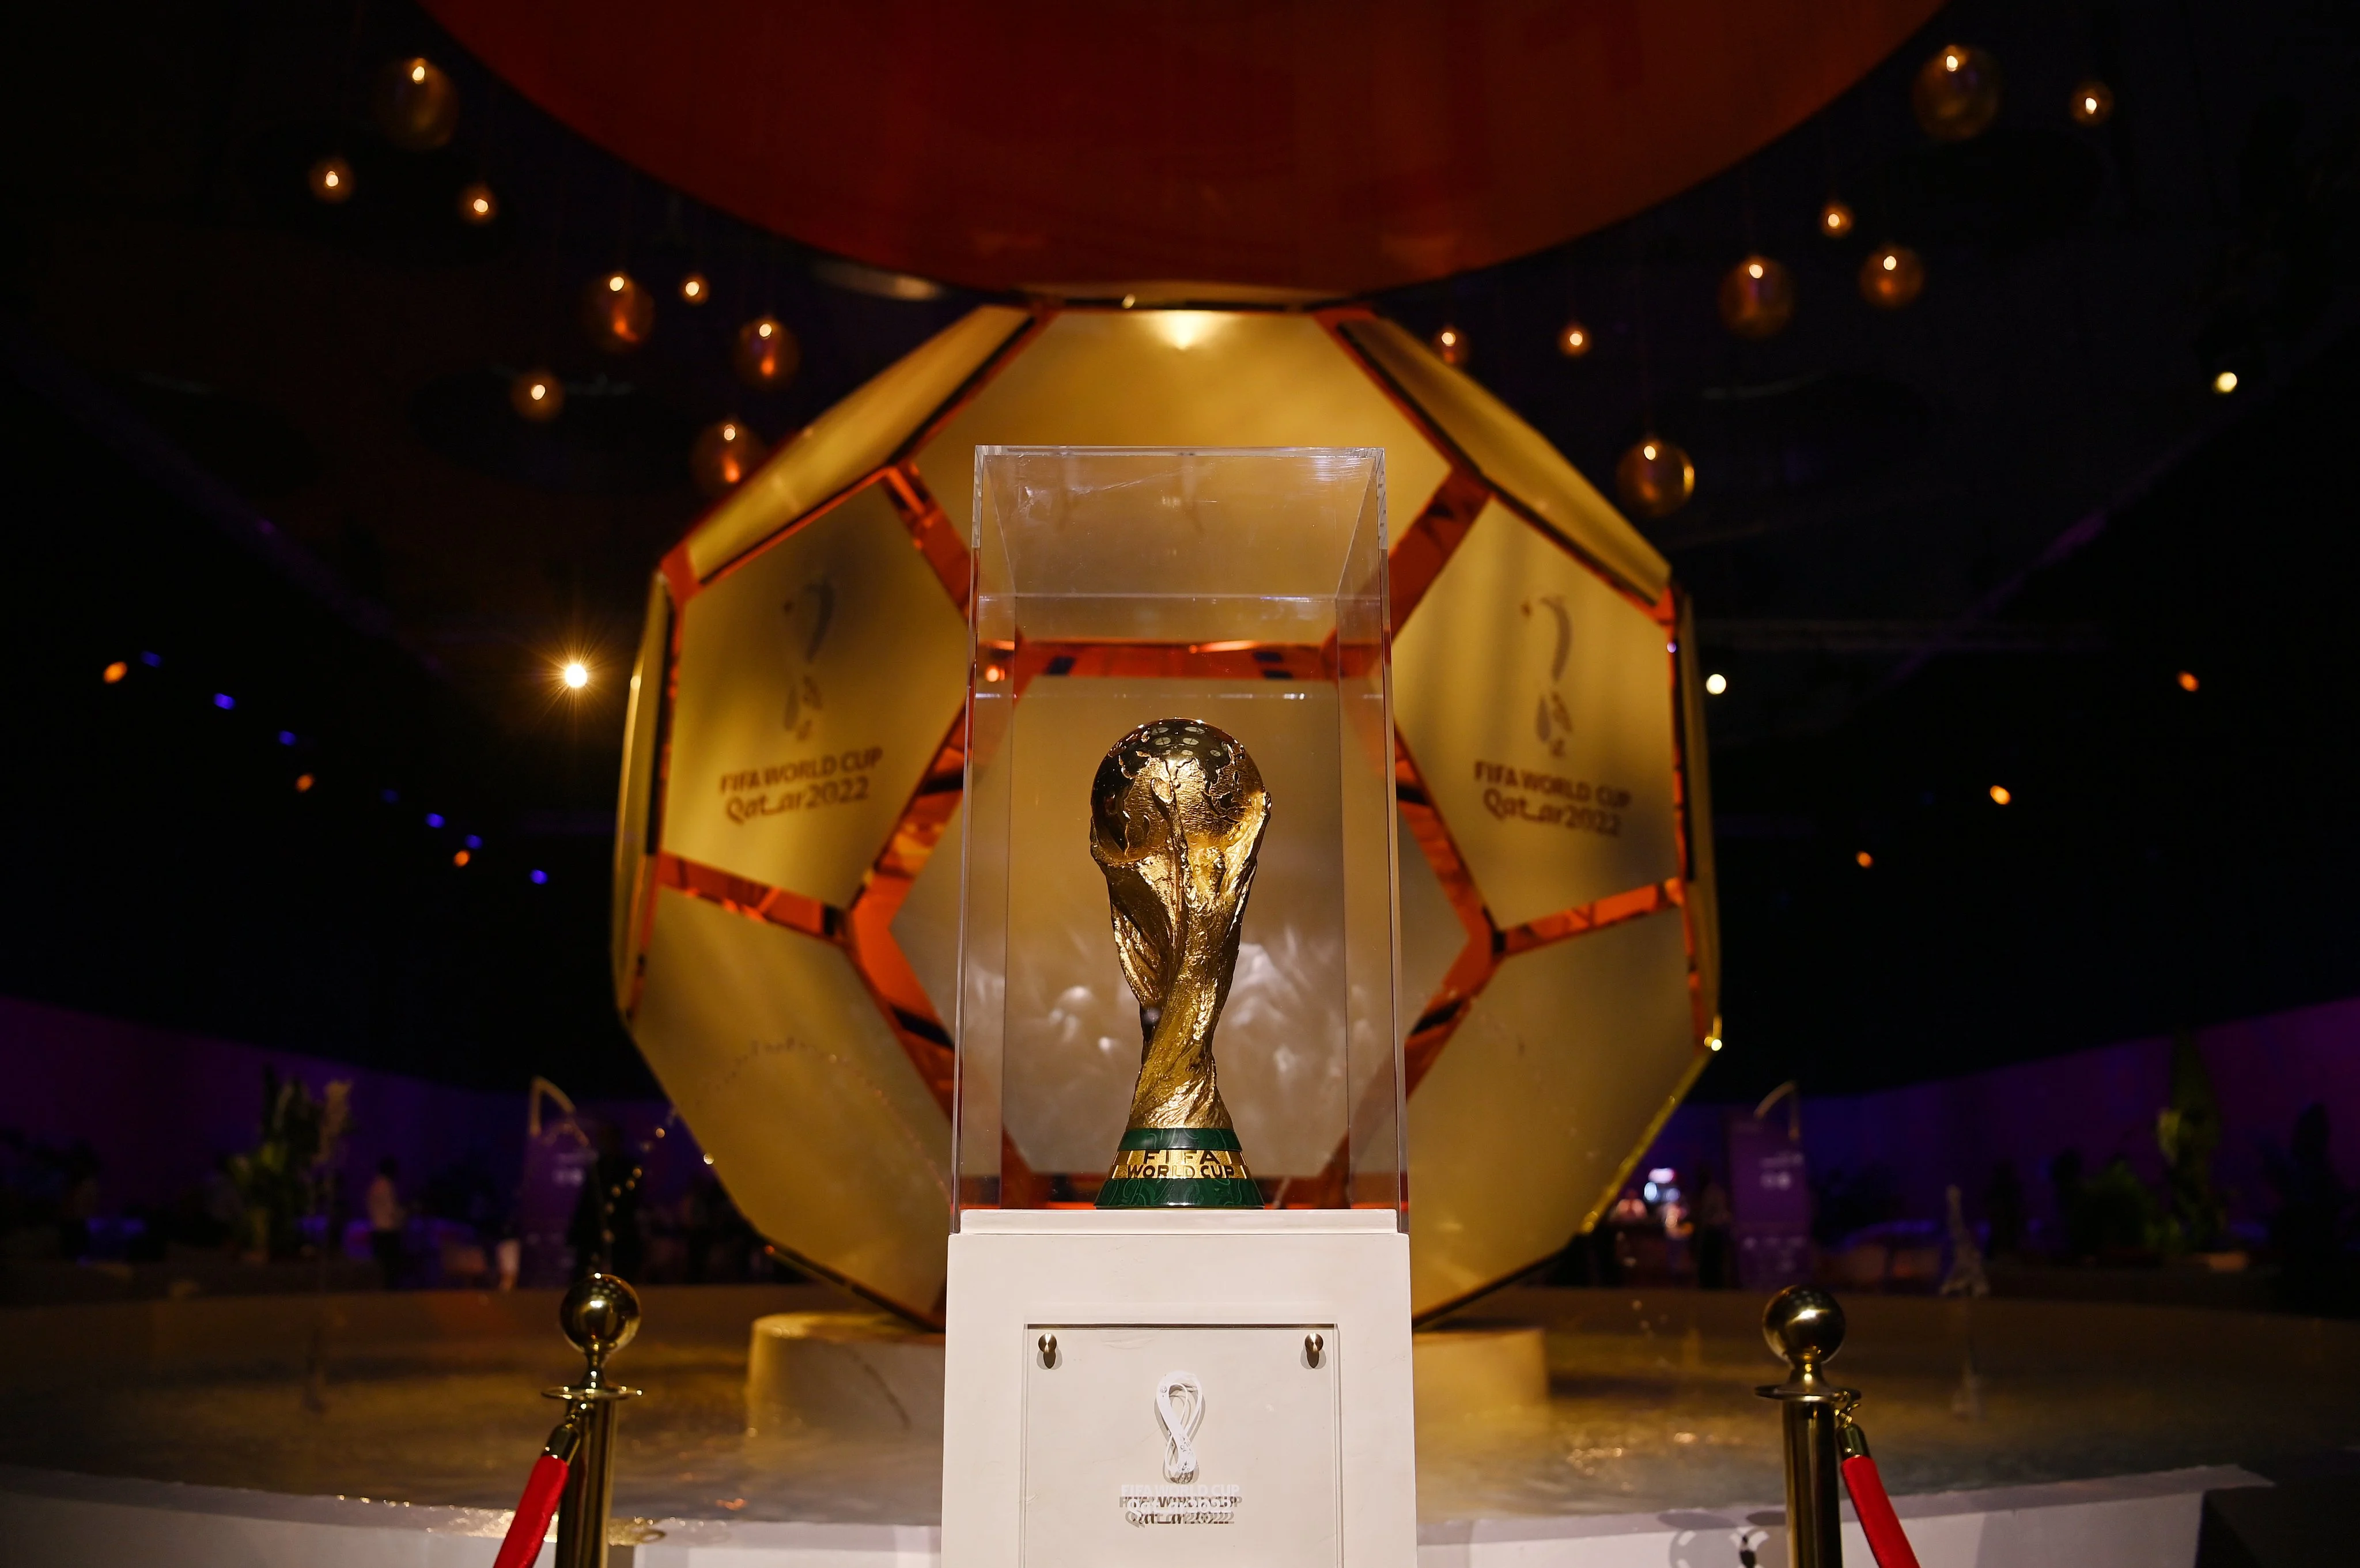 Copa do Mundo 2022: conheça os estádios em que o Brasil irá jogar